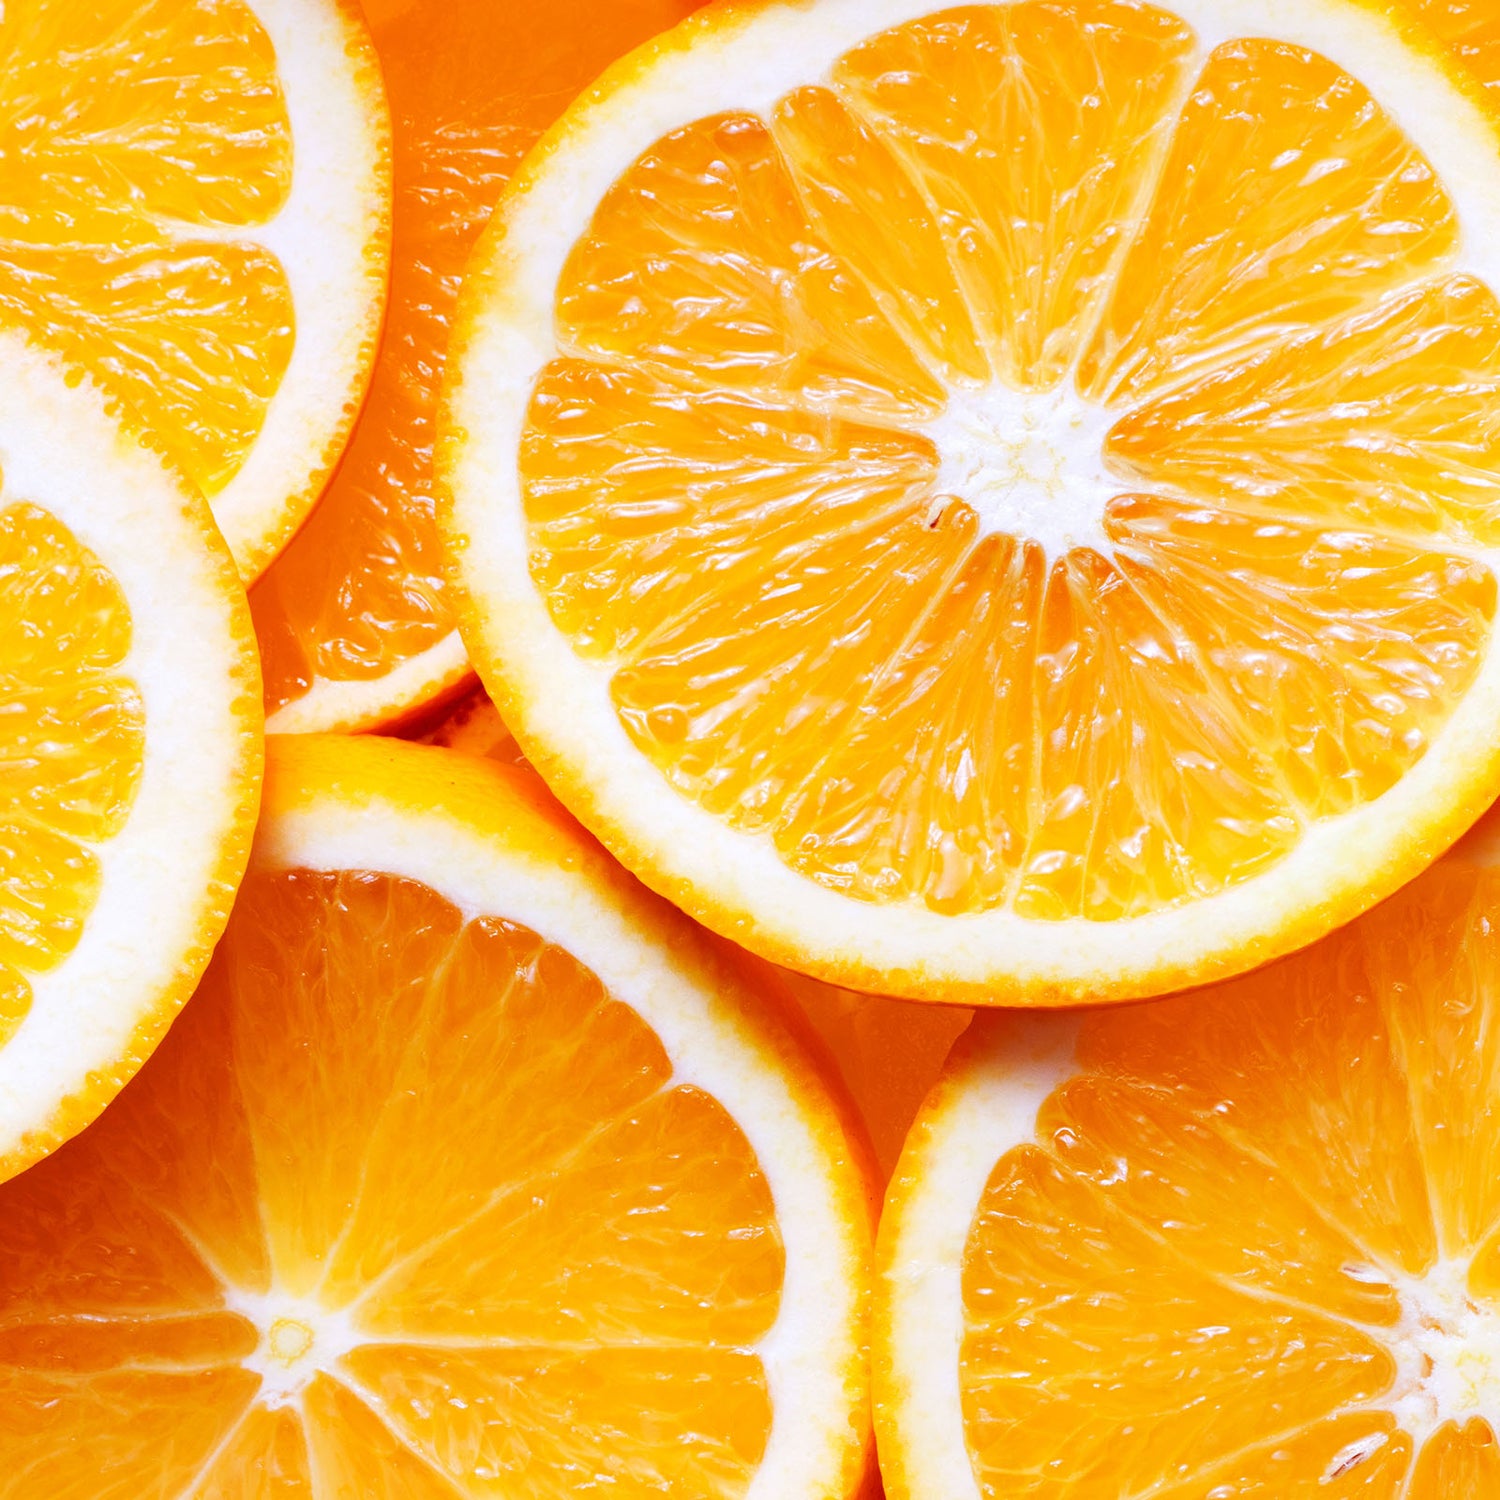 Citrus aurantium dulcis  (orange) peel oil